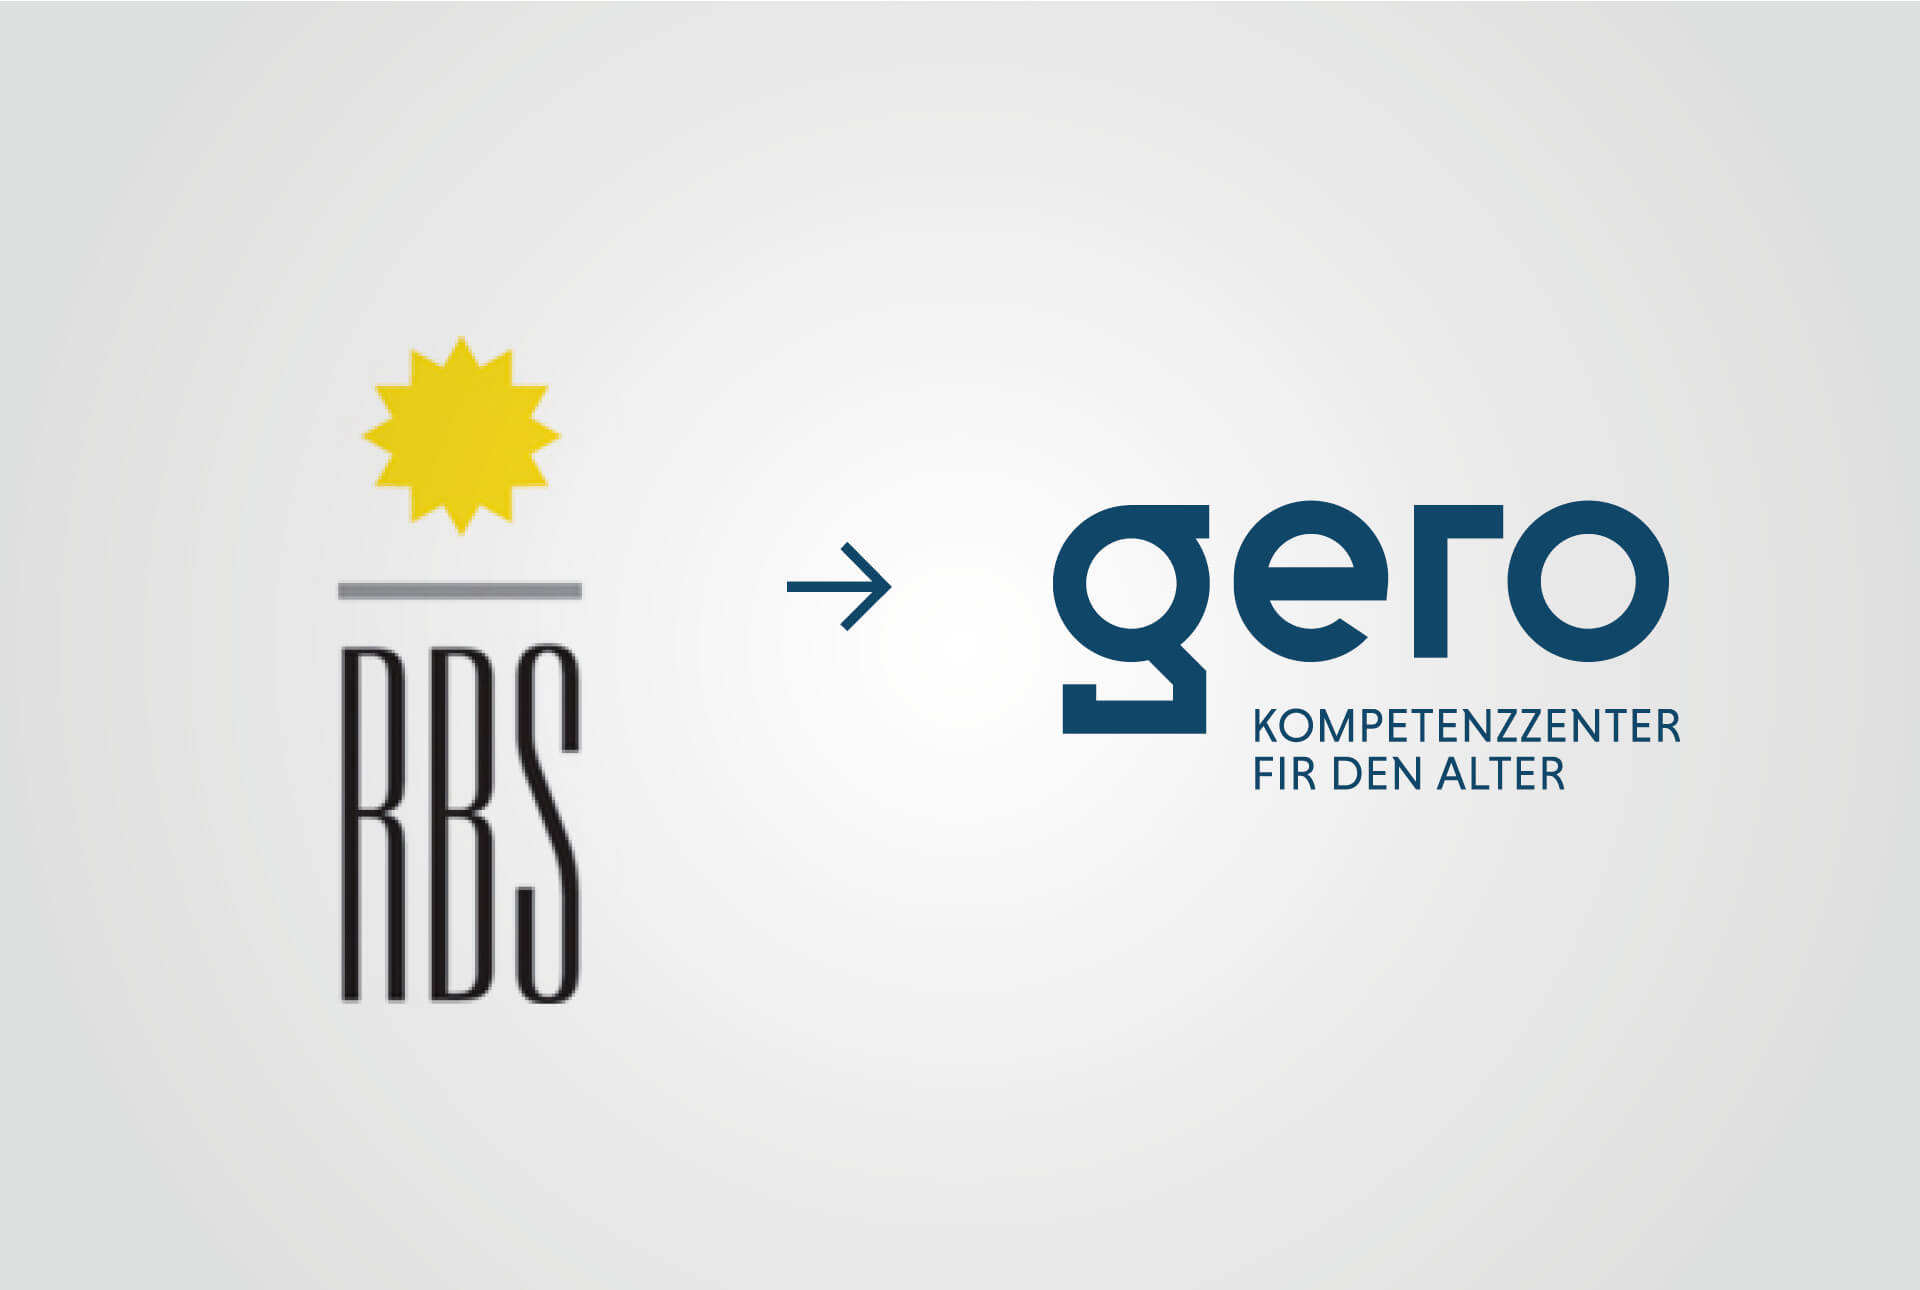 Image représentant les deux logos : celui d'RBS (ancien nom de la structure) et celui de Gero